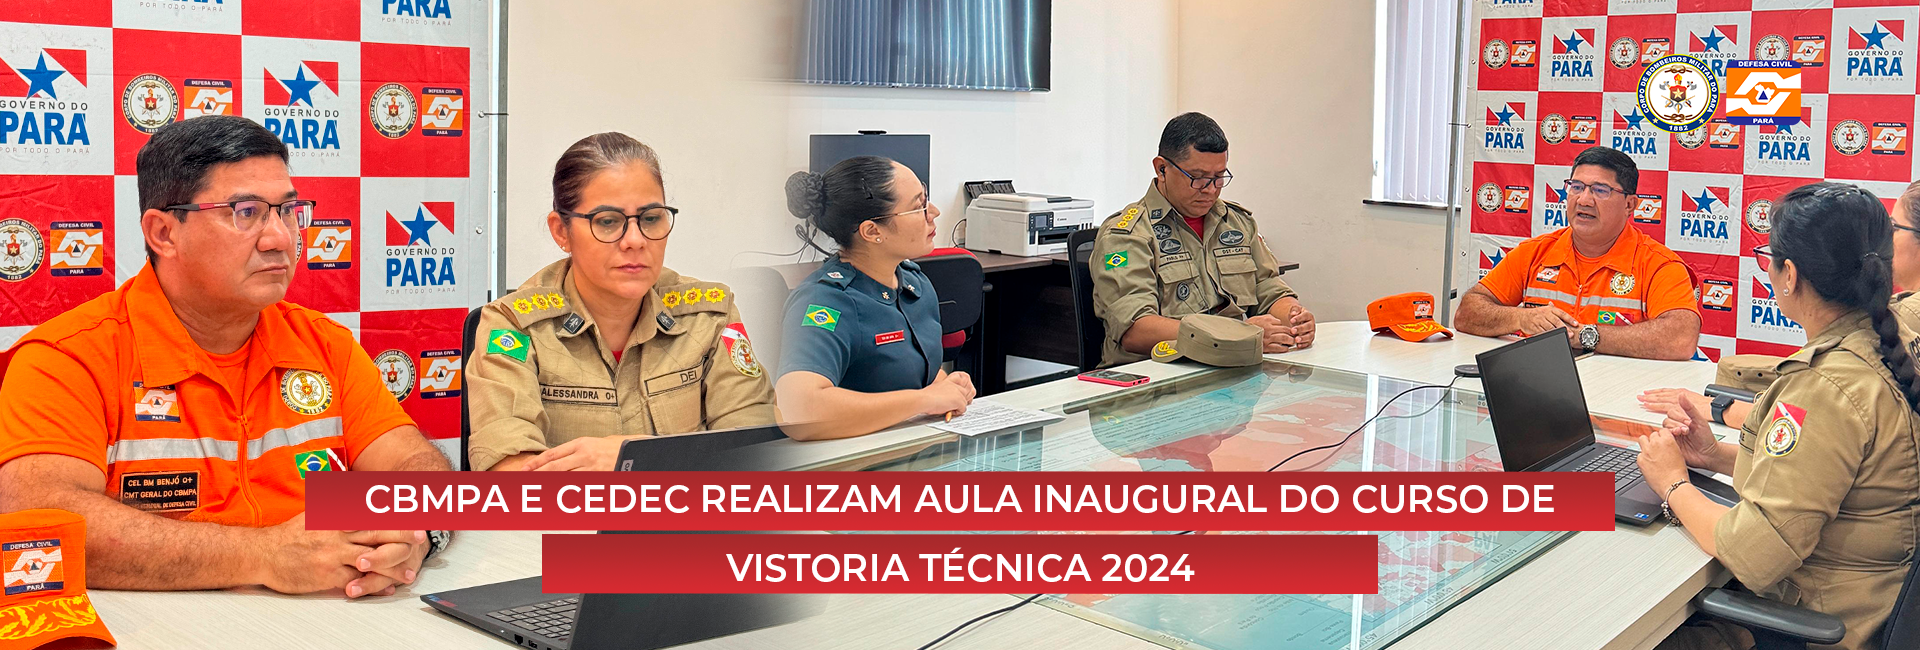 CBMPA E CEDEC REALIZAM AULA INAUGURAL DO CURSO DE VISTORIA TÉCNICA 2024